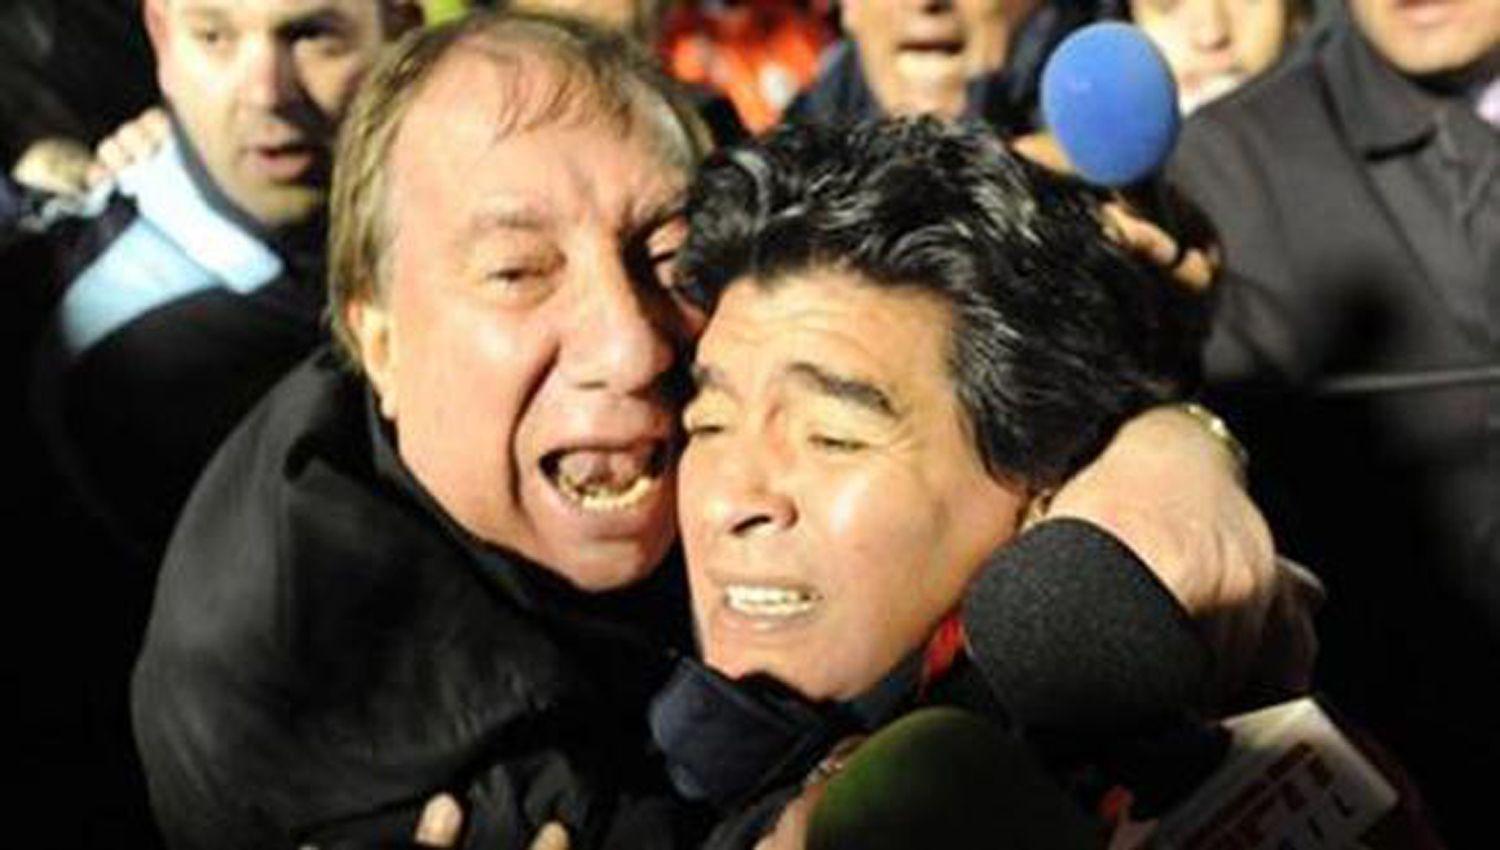 Campeones del rsquo86 se reuniriacutean con Bilardo para contarle sobre la muerte de Maradona